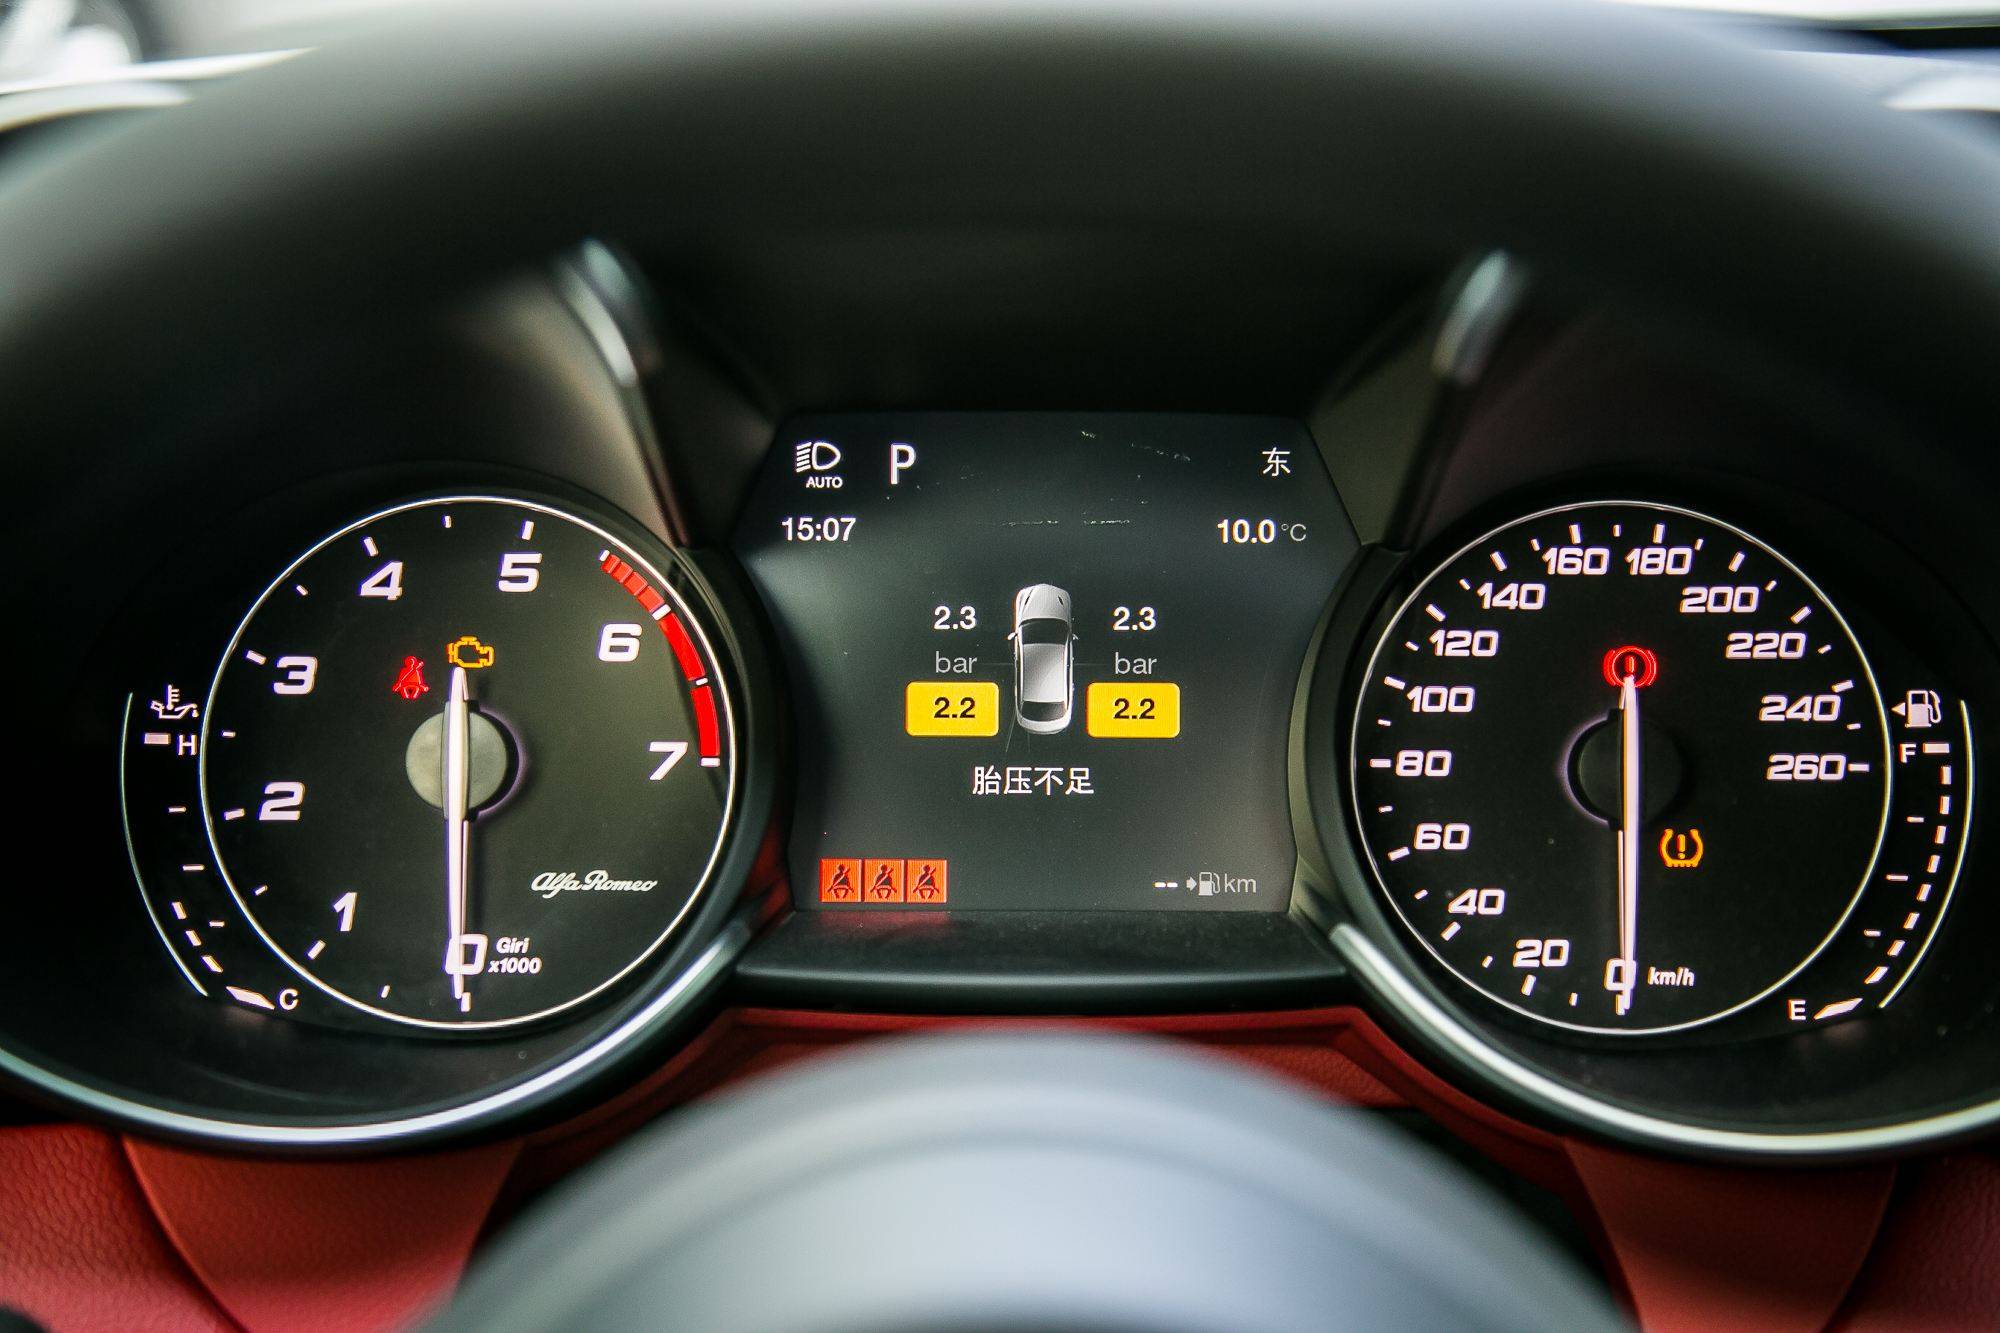 汽车仪表显示的车速是不准确的那么里程表的数据是准确的吗